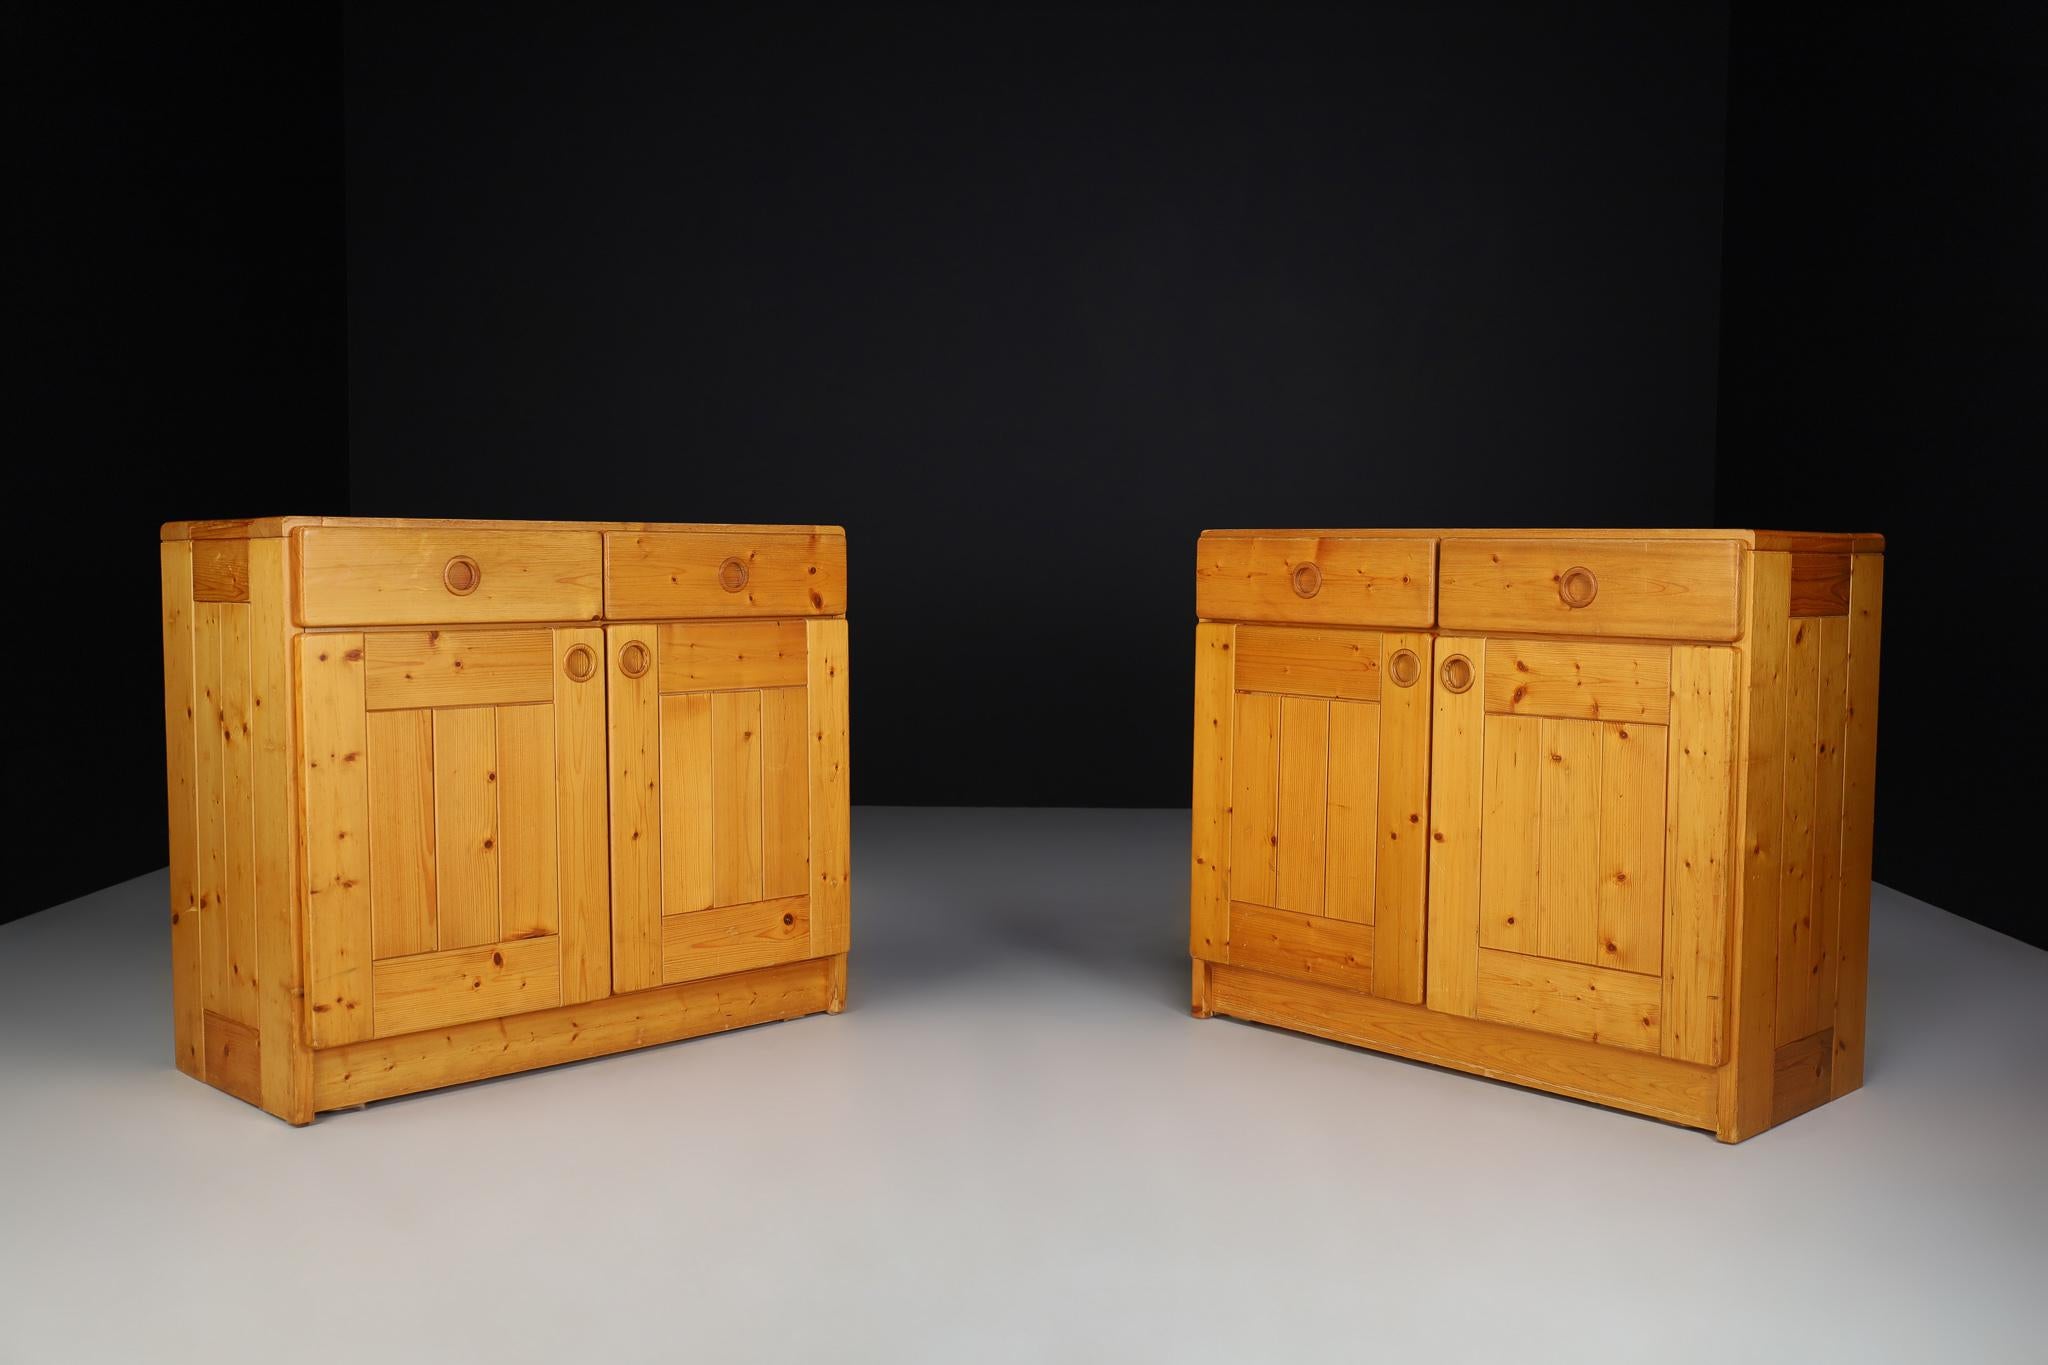 Mid-Century Modern Schrank/Schrank von Charlotte Perriand für Les Arcs. Mit zwei ausziehbaren Schubladen. Die Türen öffnen sich zu einem Regal mit zwei Fächern für die Aufbewahrung. Er ist aus Kiefernholz, ca. 1970, in gutem Originalzustand. Sehr